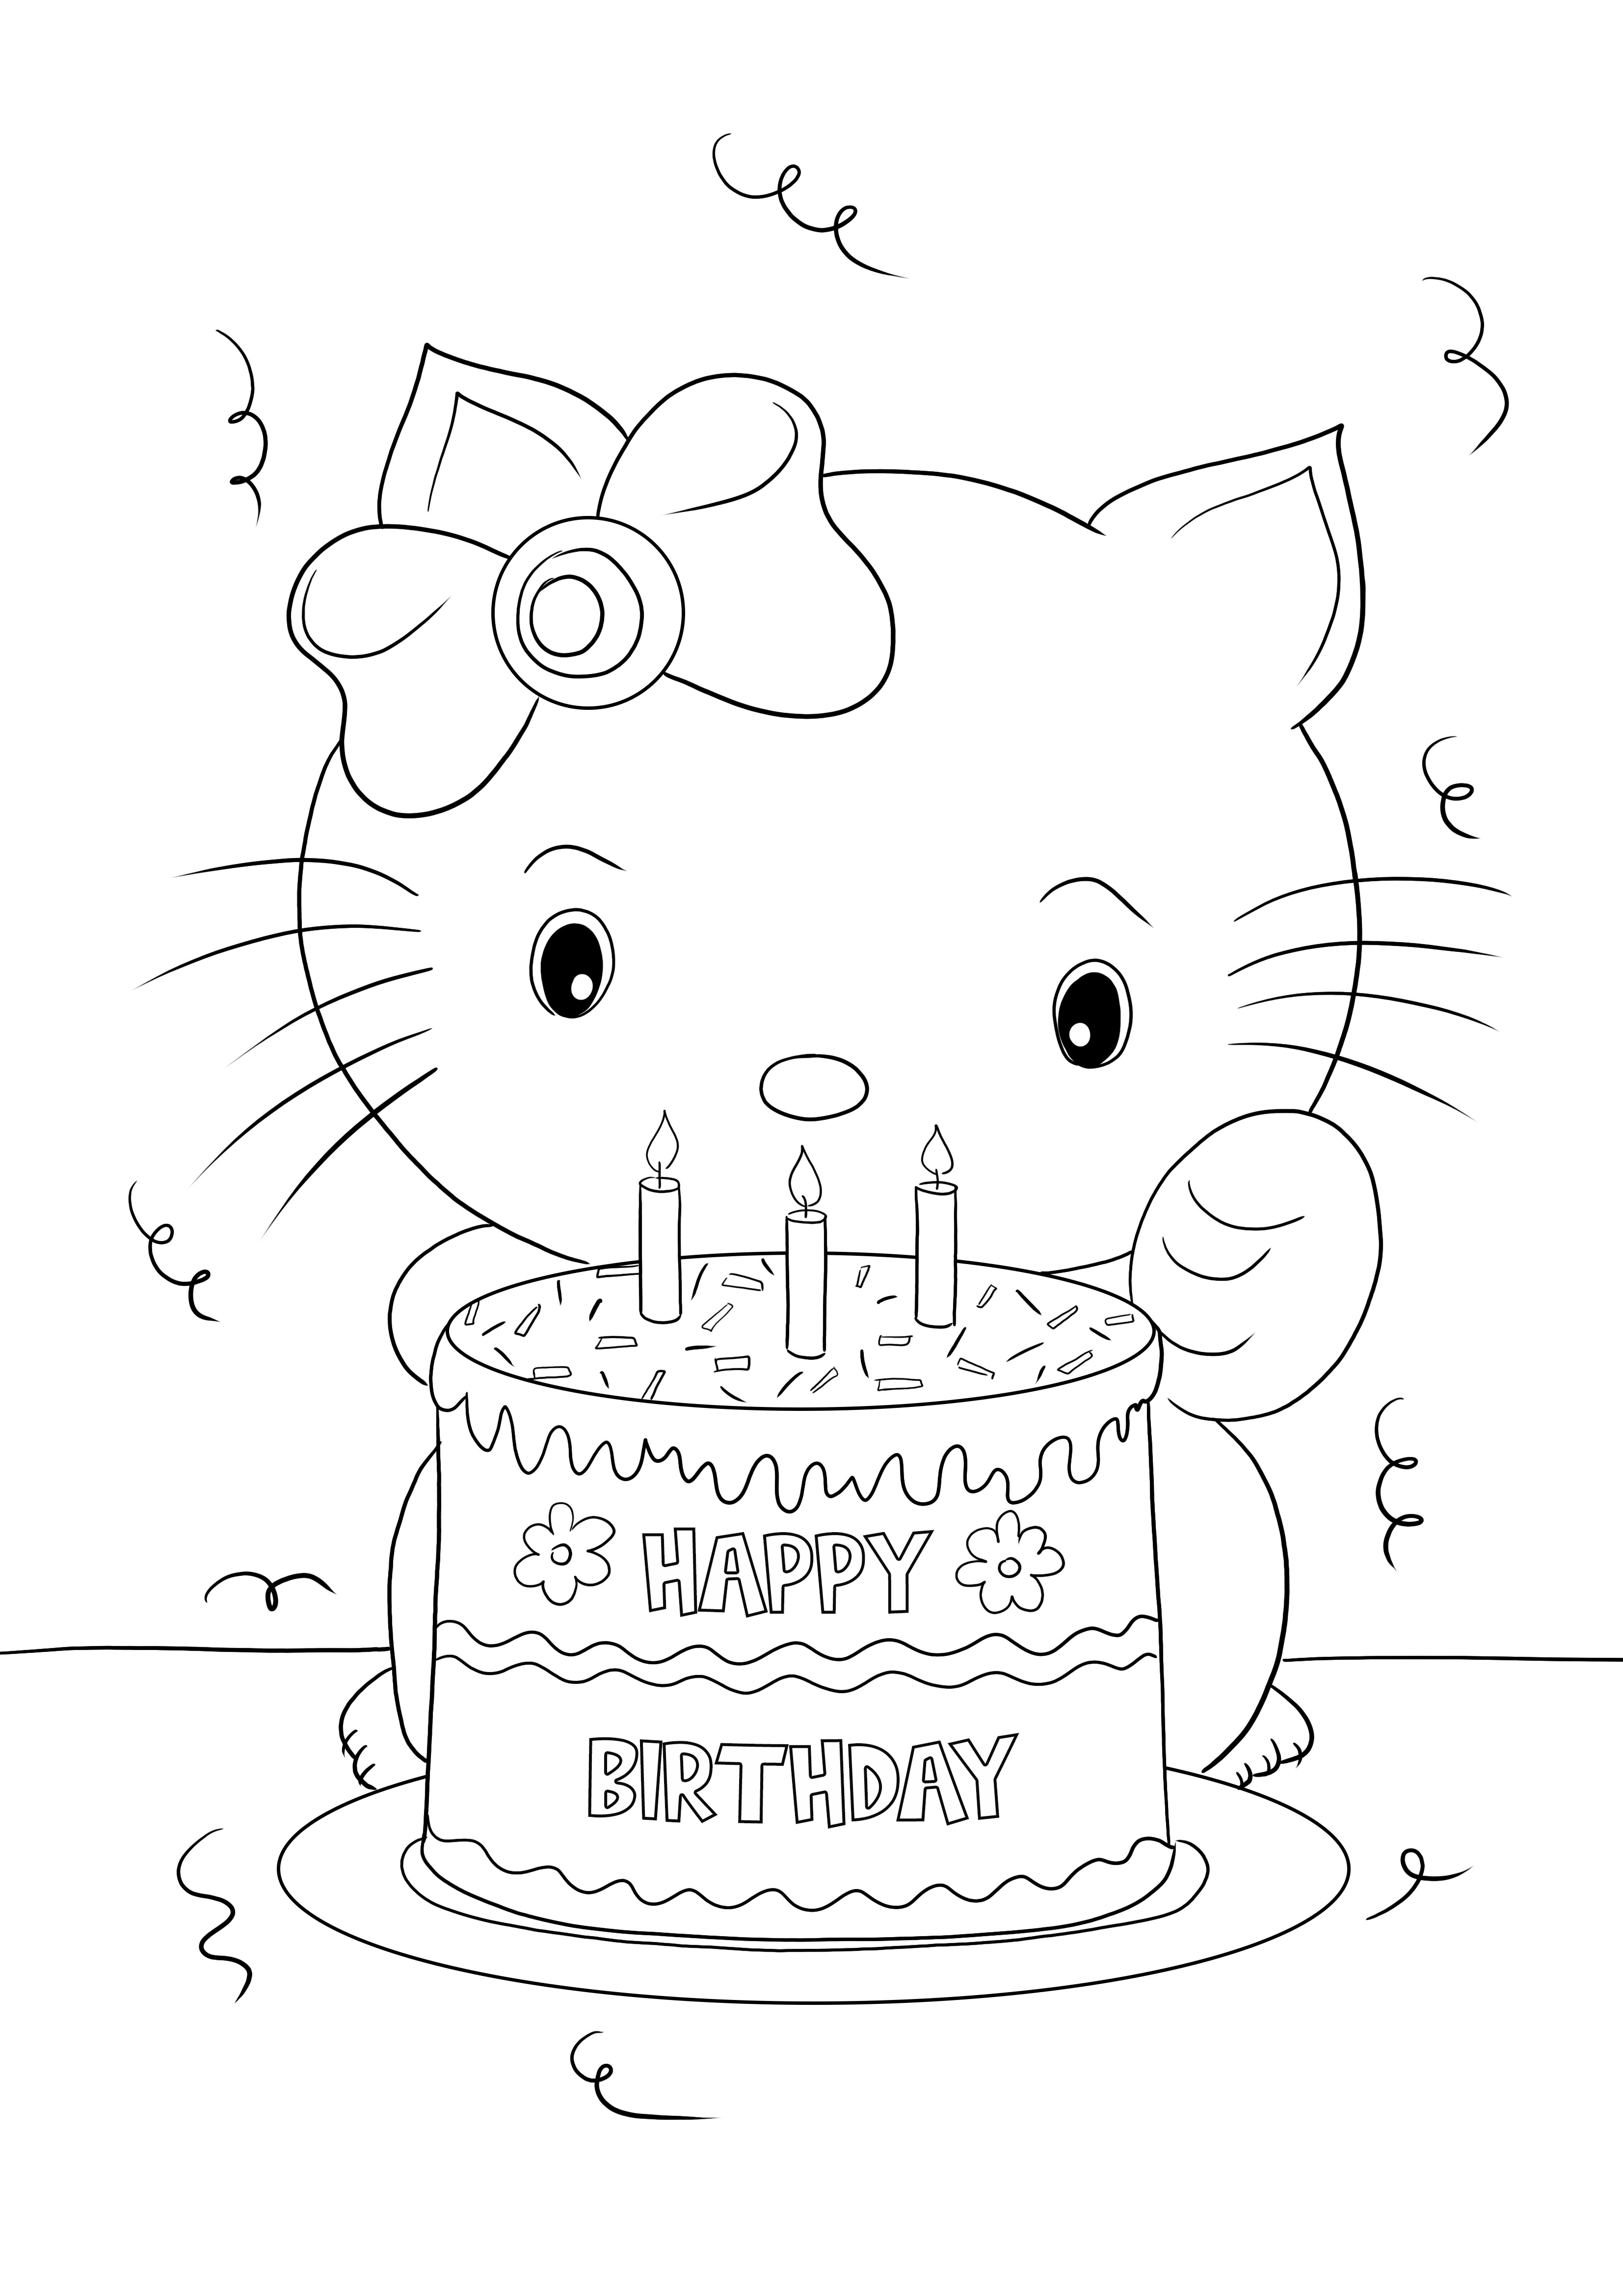 Stampa gratis di Happy Birthday Hello Kitty per colorare e imparare divertendosi